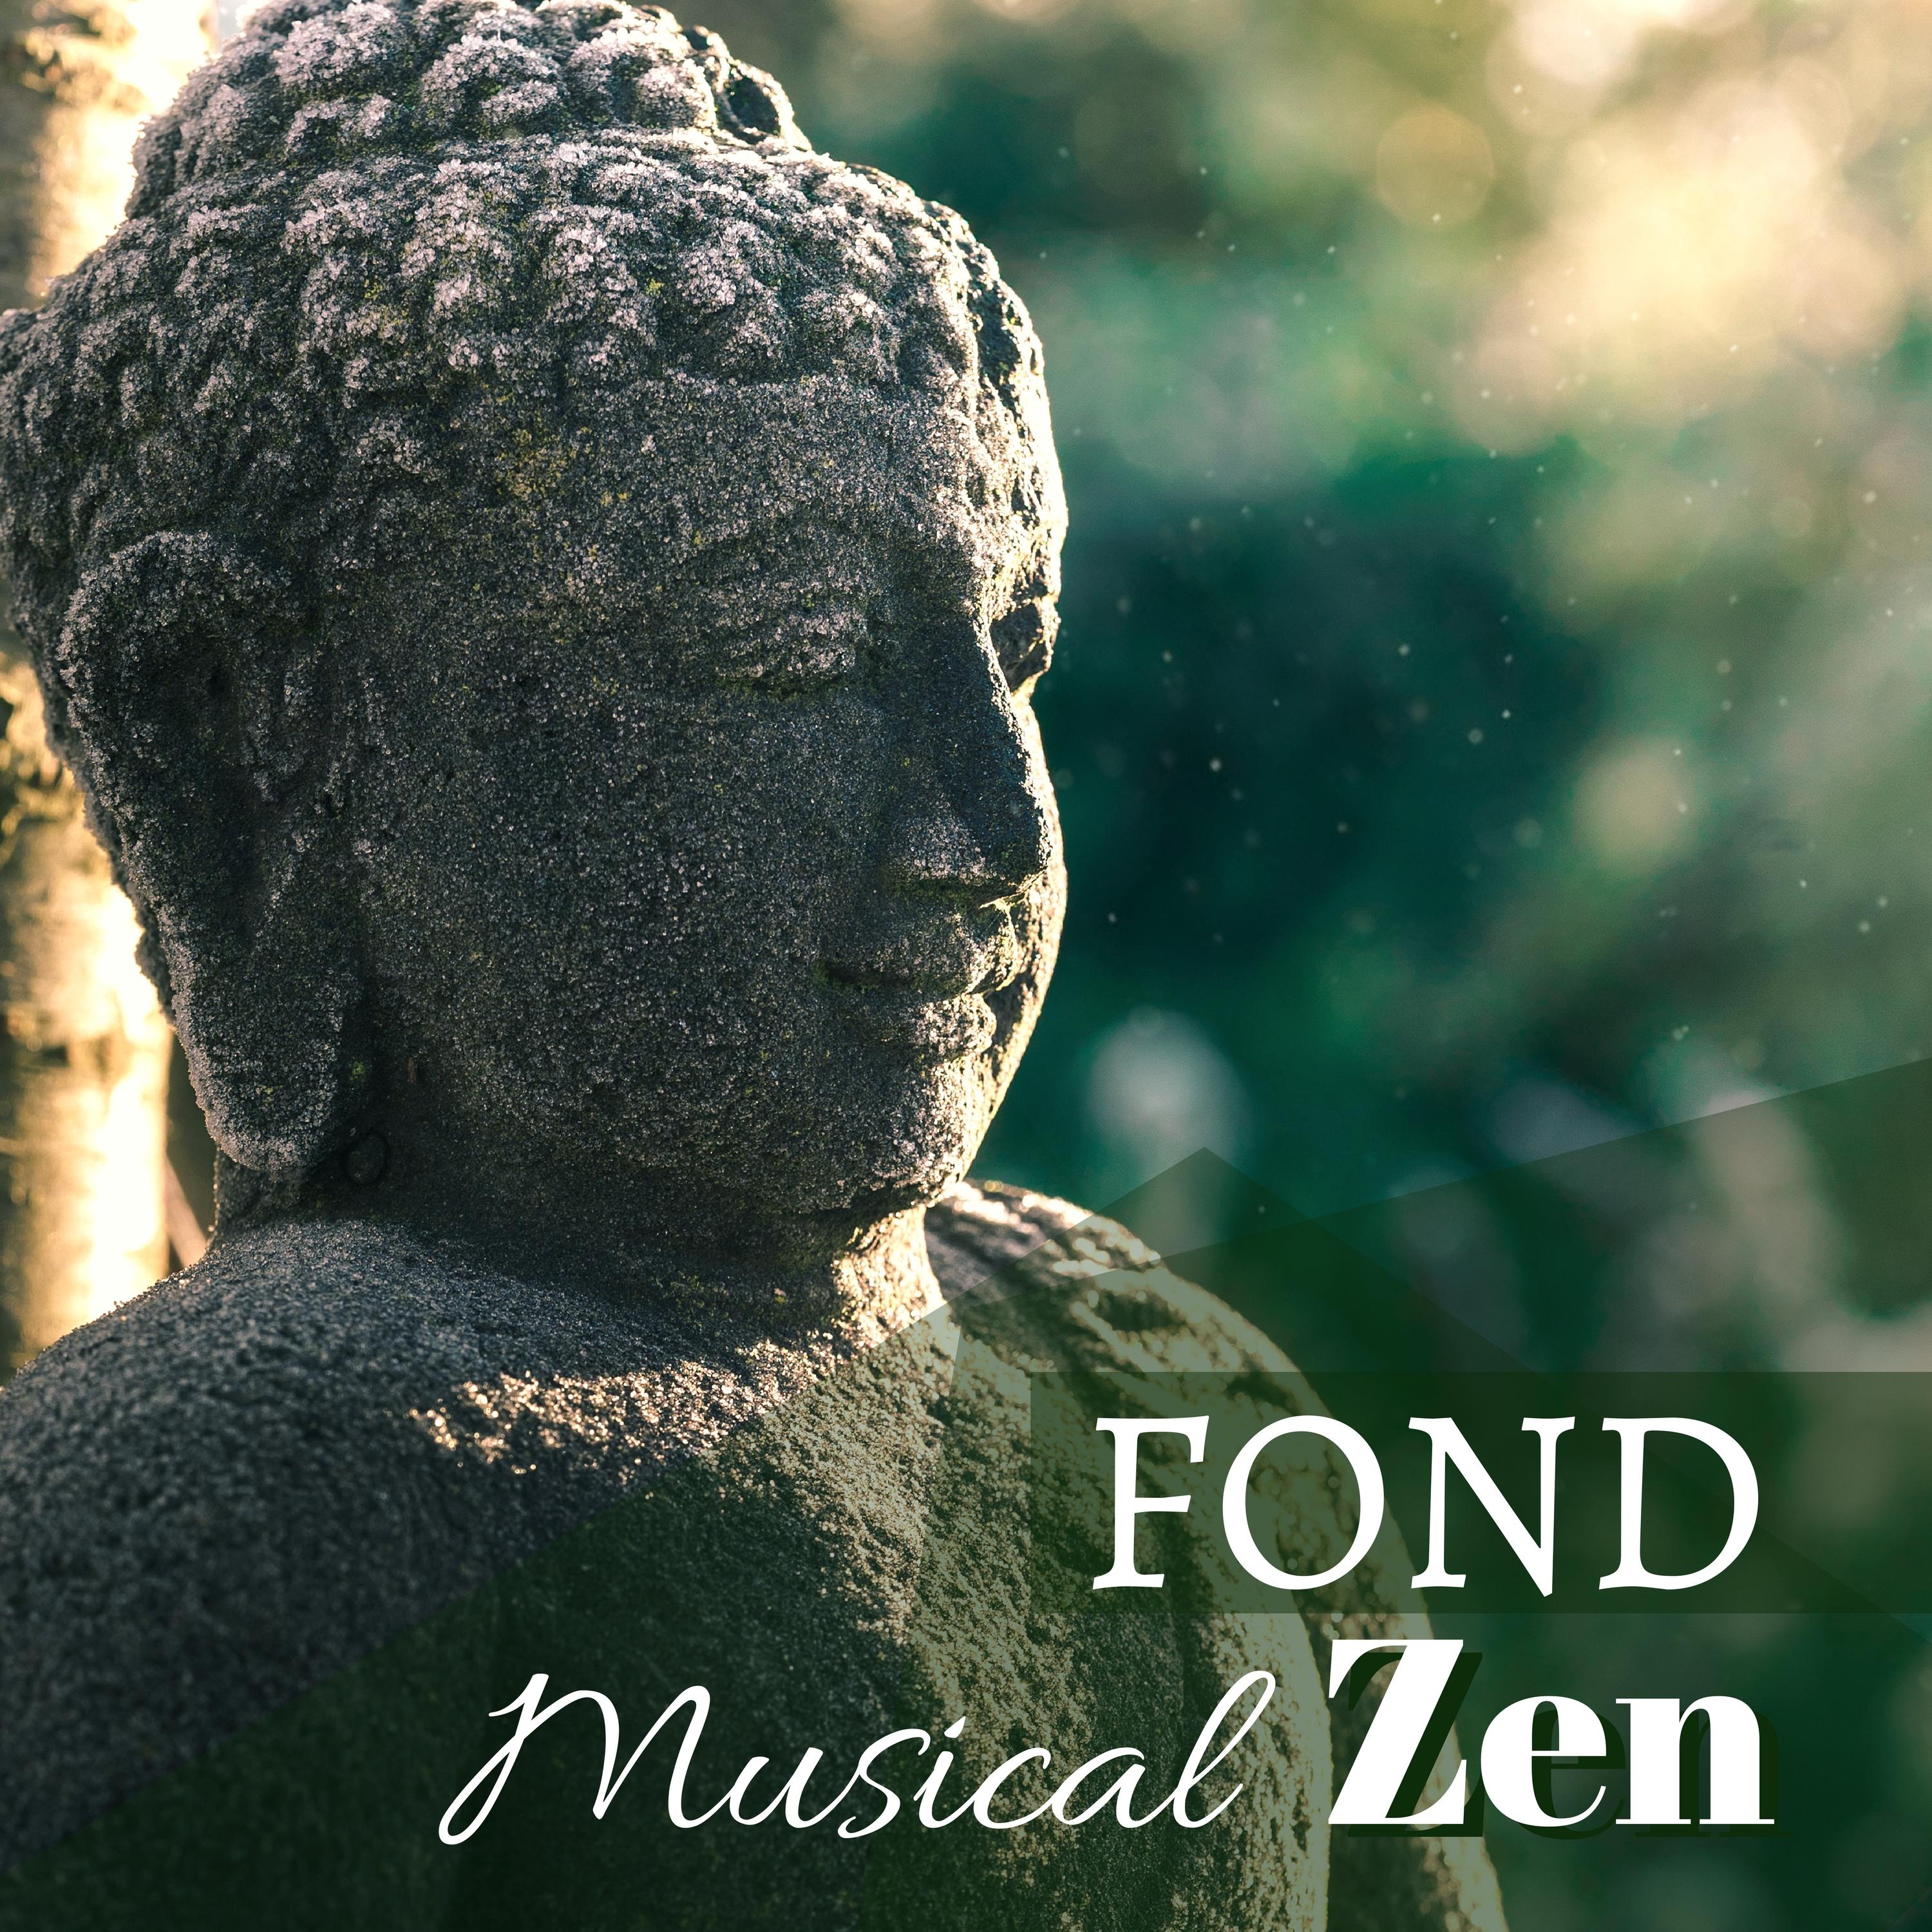 Fond Musical Zen